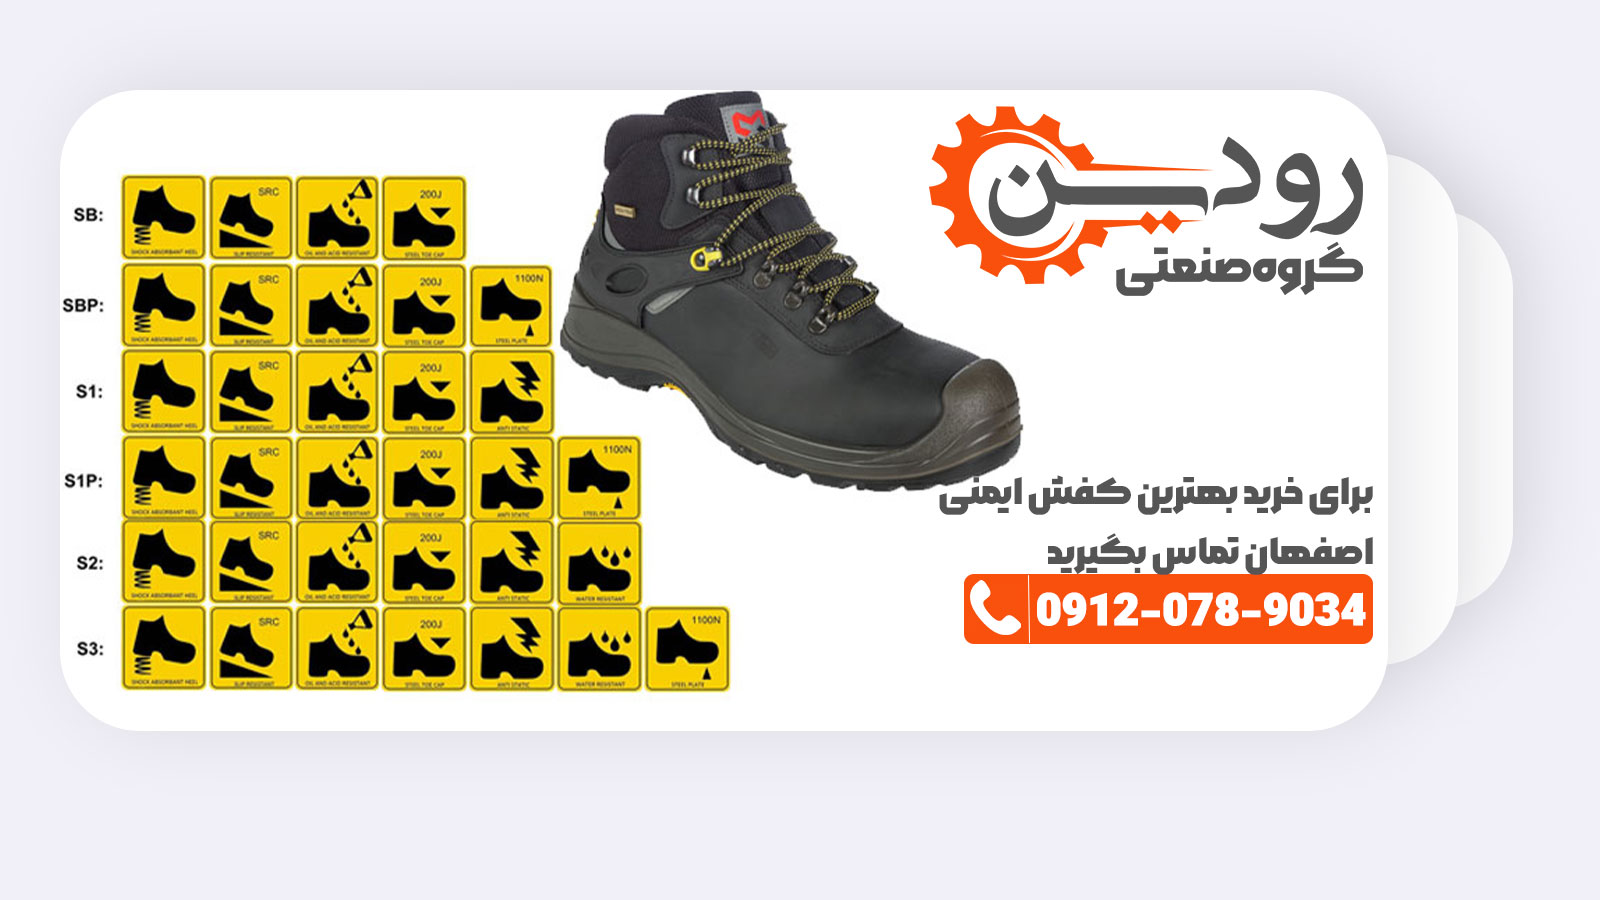 فروشگاه کفش ایمنی اصفهان بهترین نوع کفش ایمنی را به مشتریان ارائه میکند.